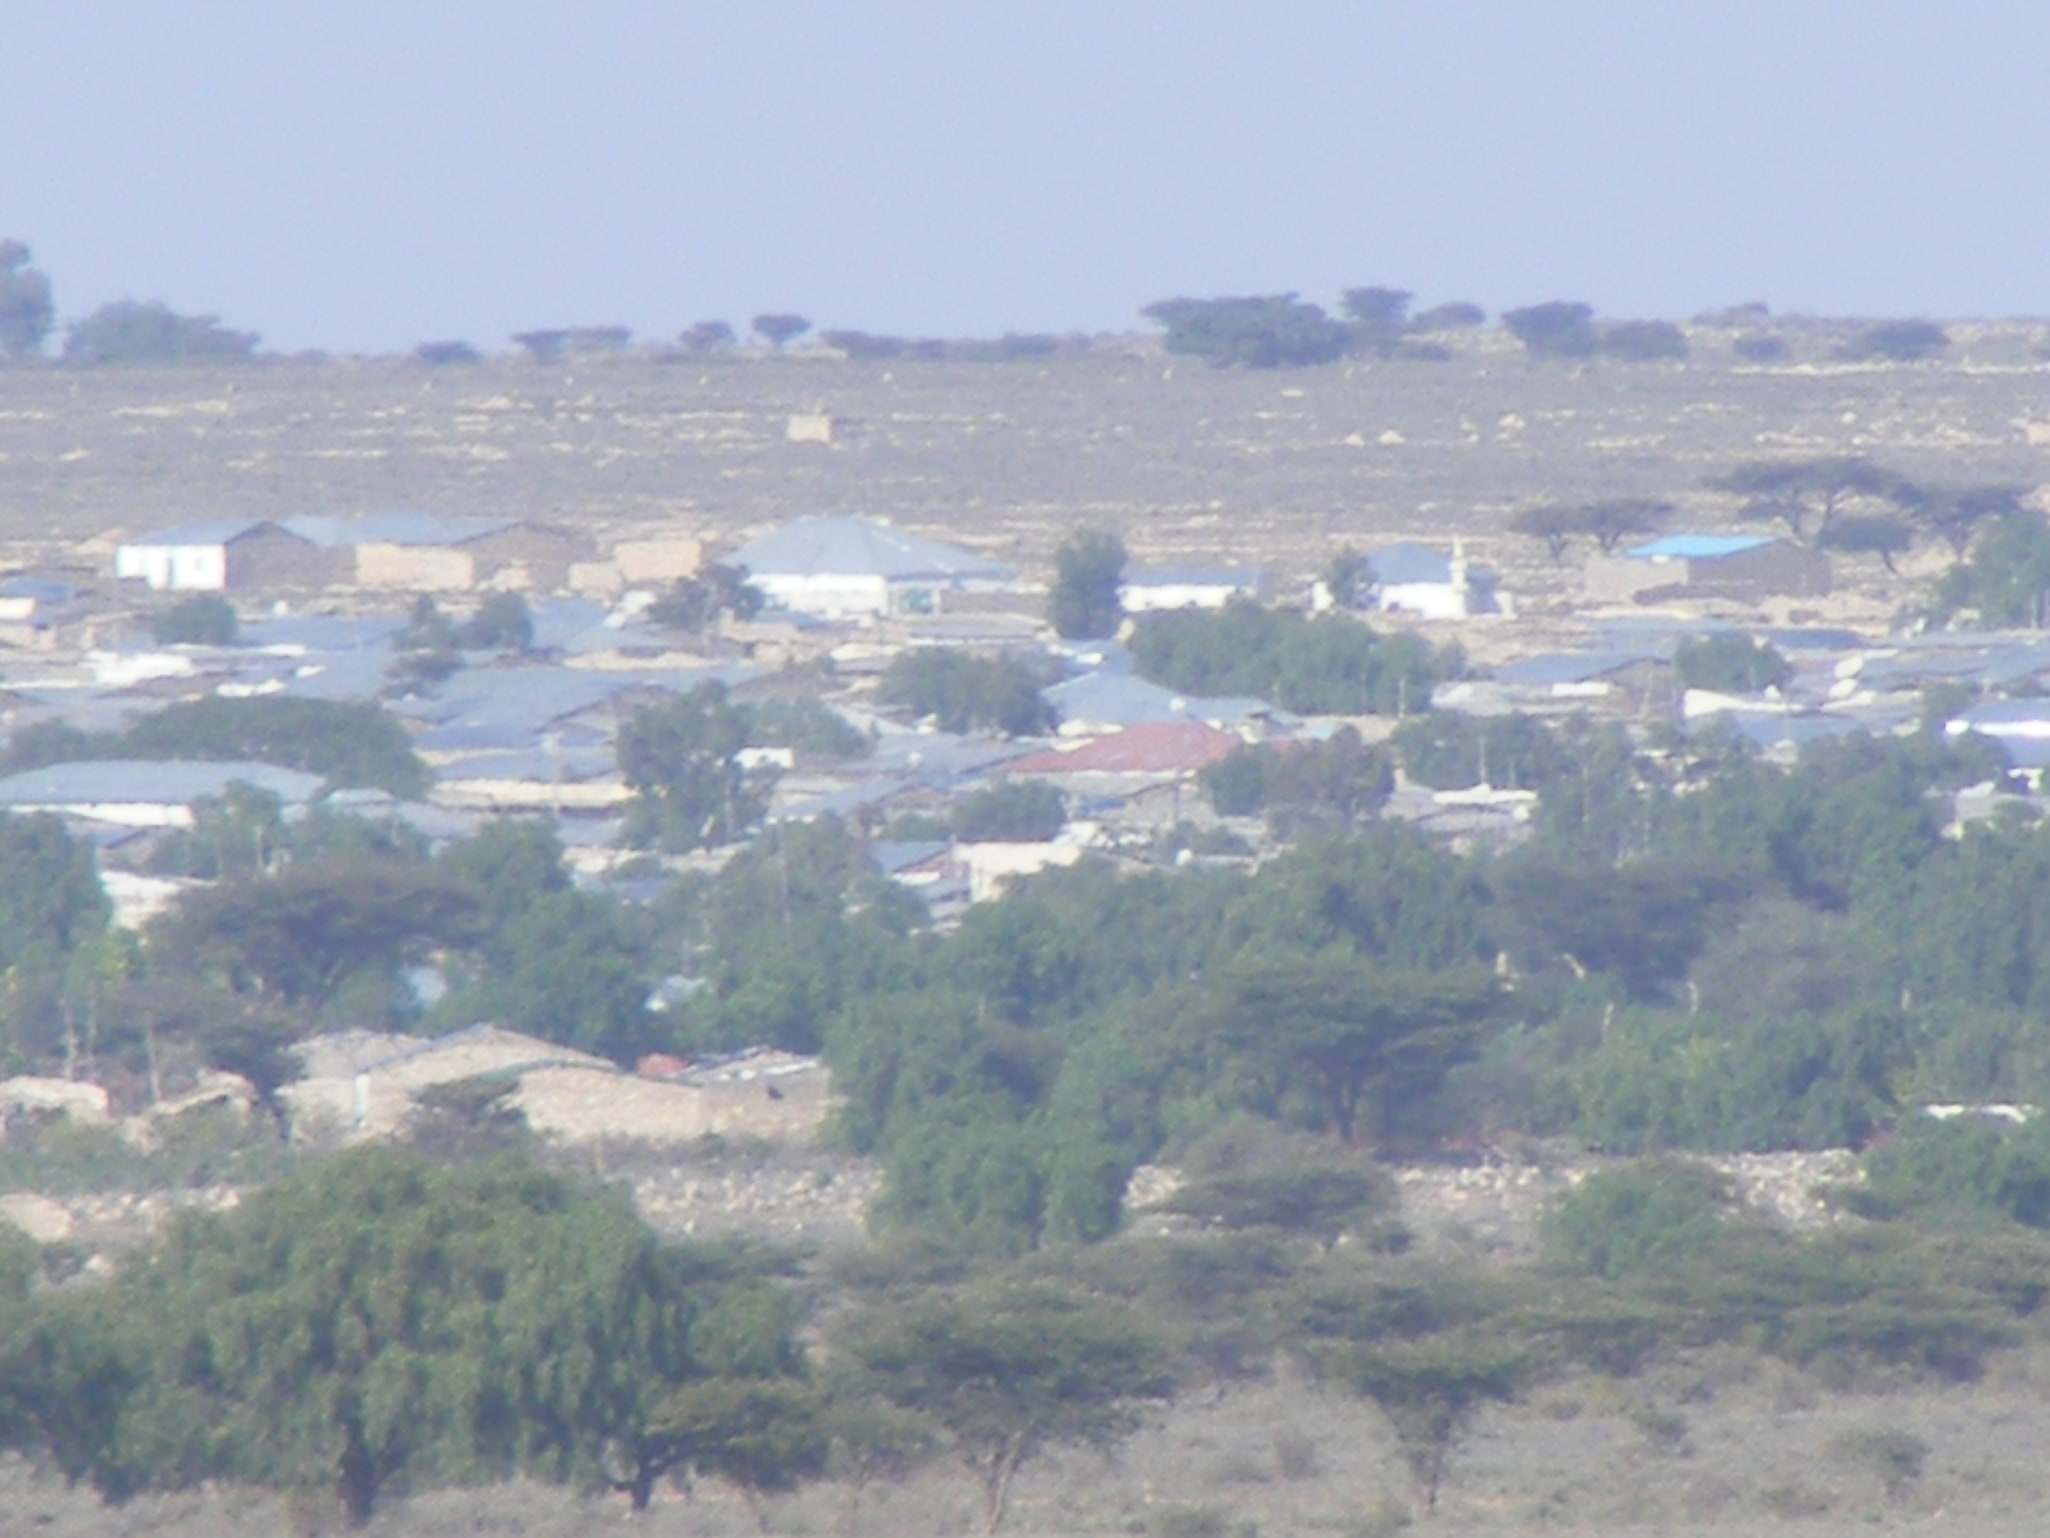 Erigavo, Somalie